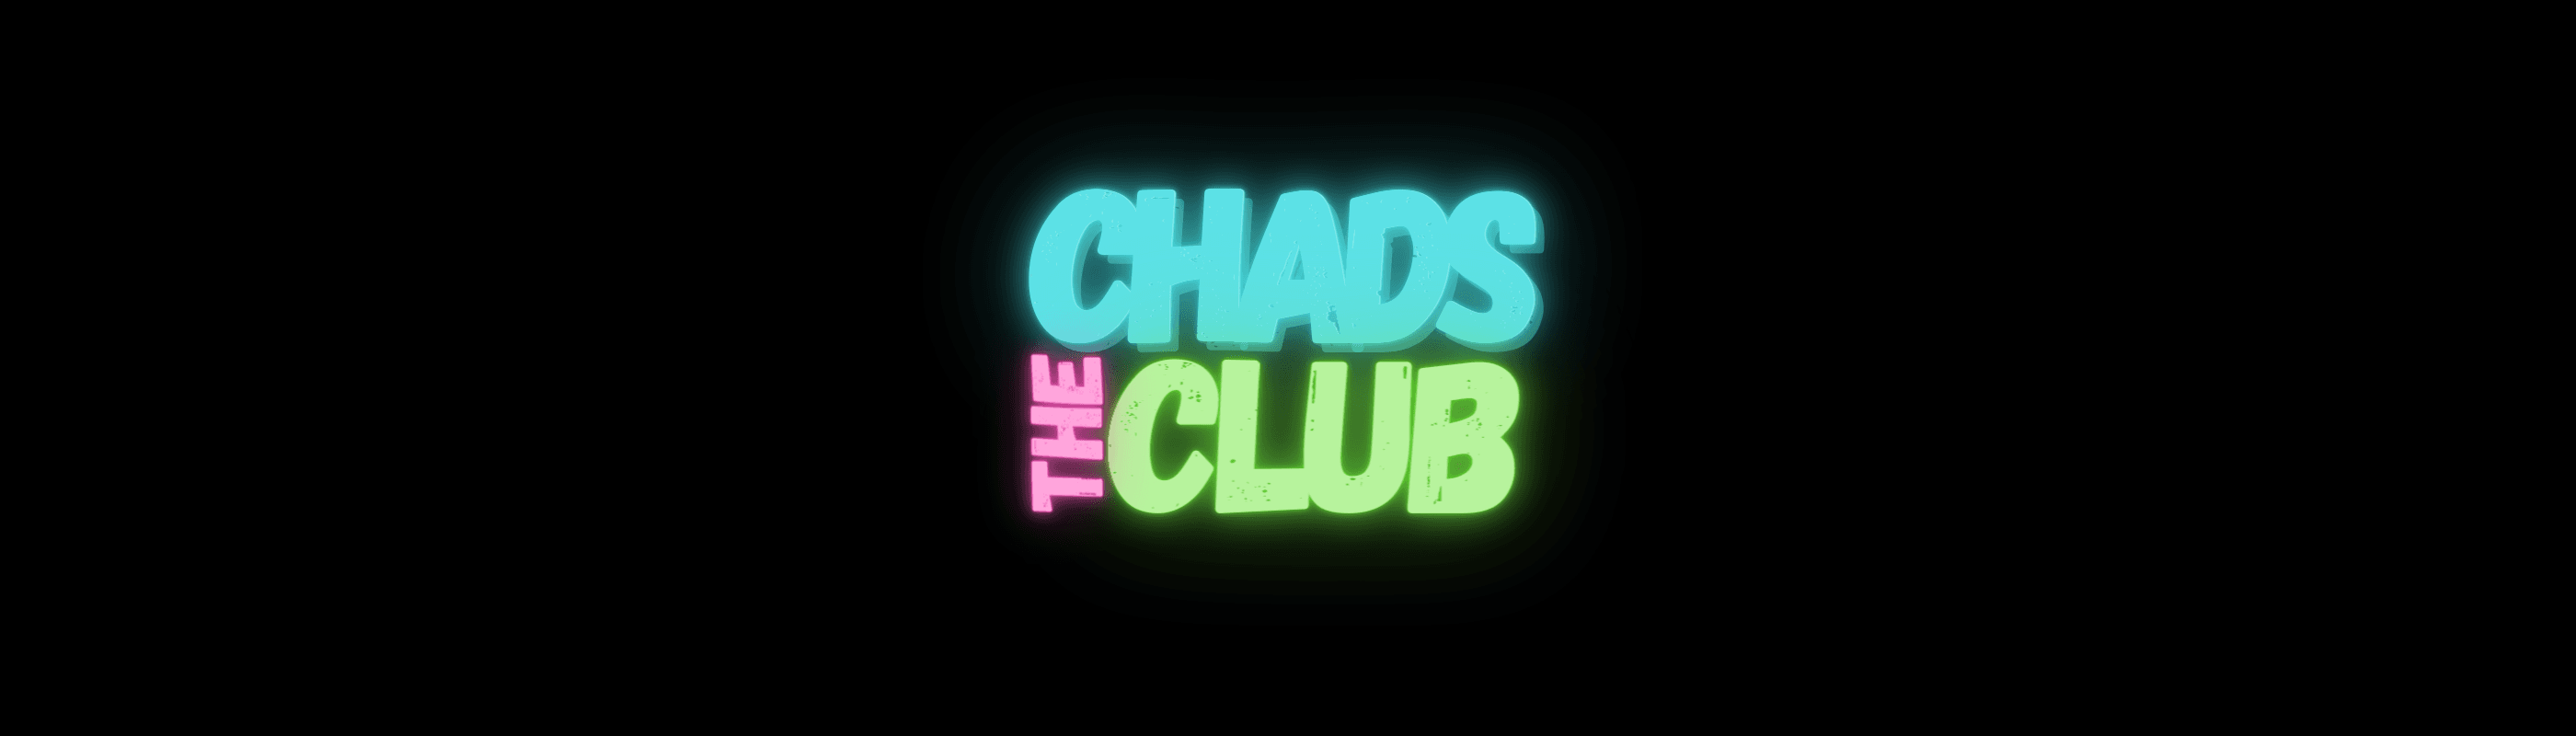 TheChadsClub bannière